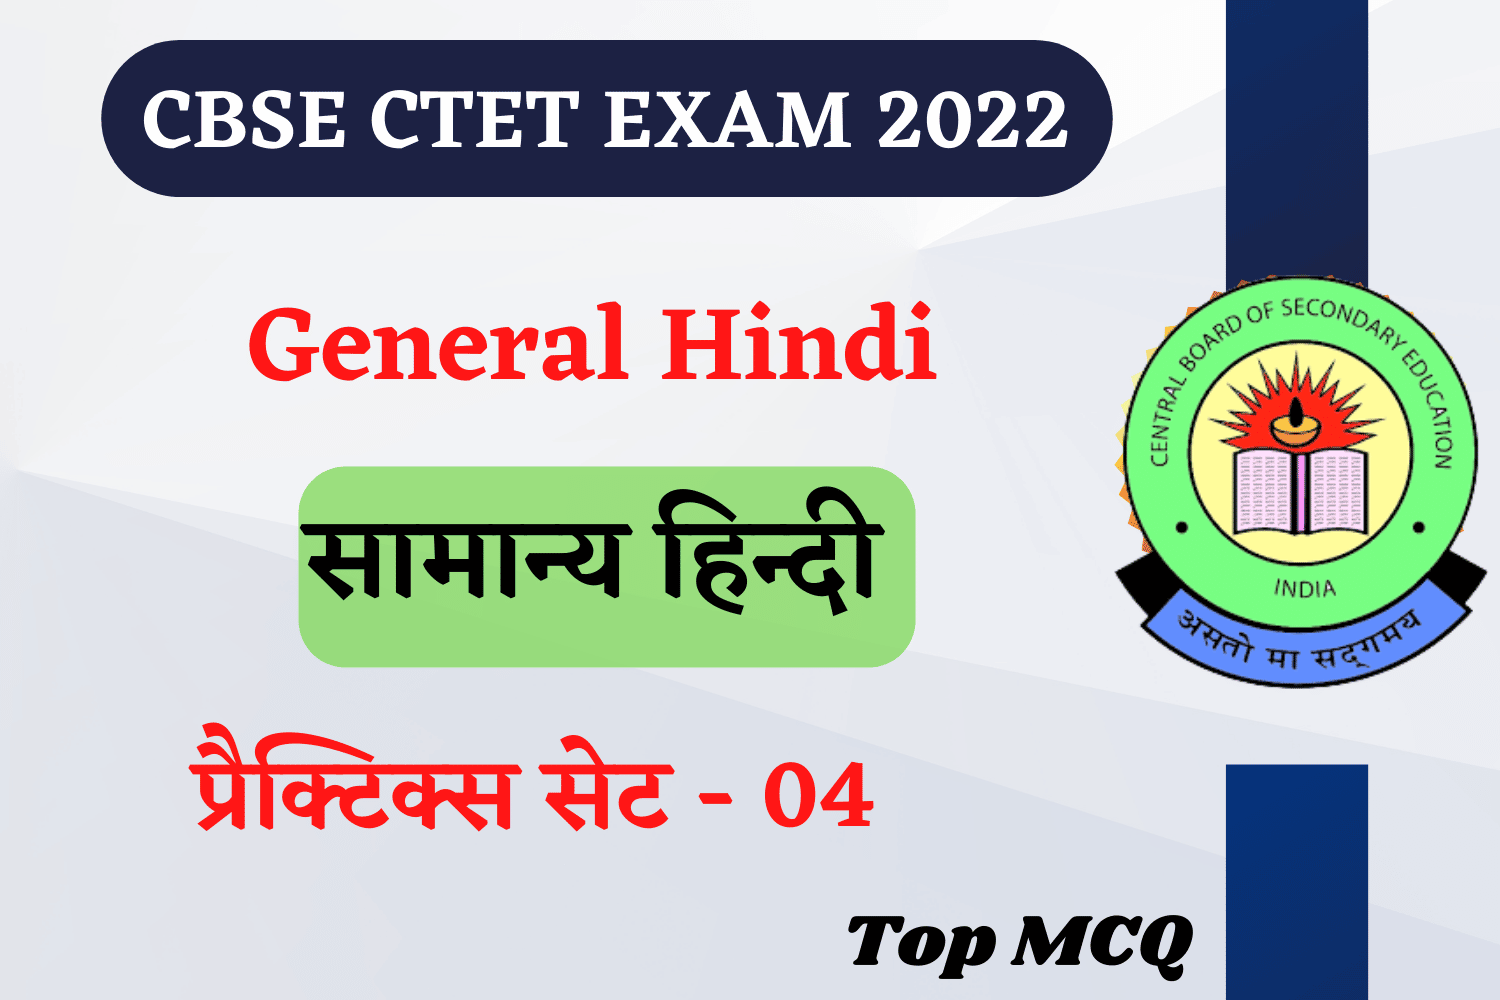 CBSE Ctet General Hindi Practice Set 04 | सामान्य हिन्दी के महत्वपूर्ण प्रश्न, पढ़ें